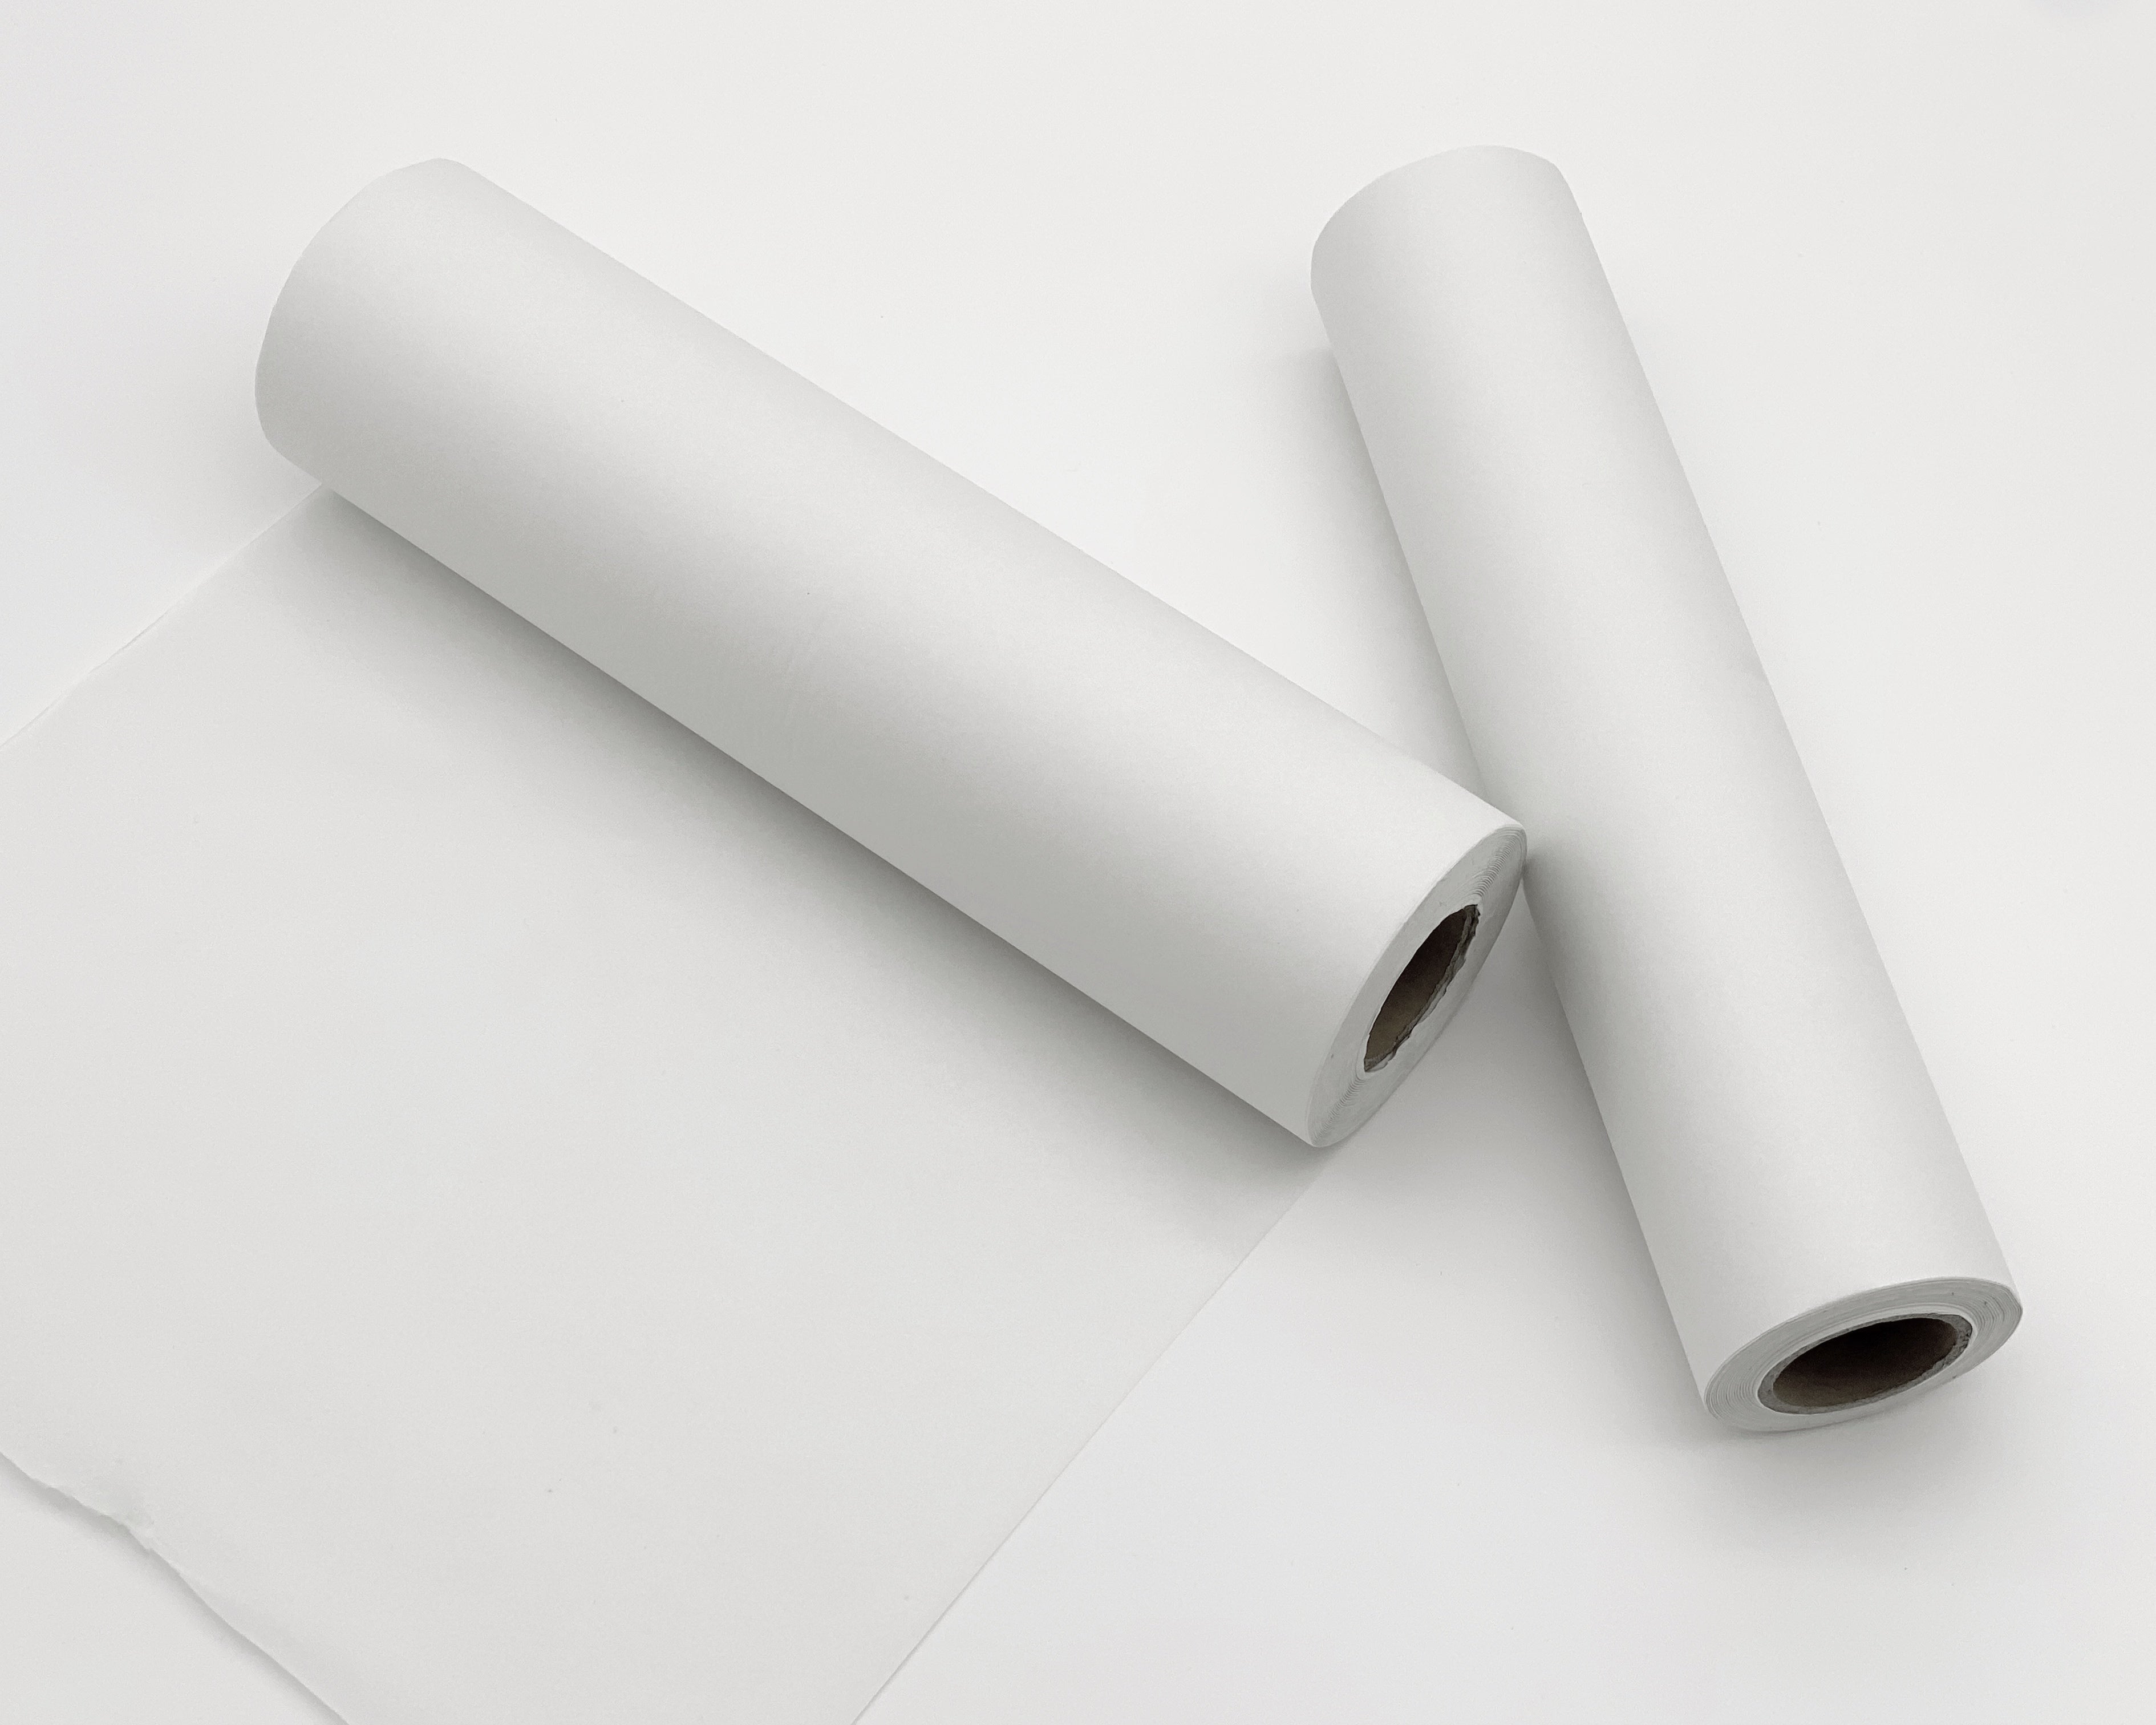 500 x 750 Super Premium Grade Acid Free Tissue Paper, Jewellers Quality  Tissue Paper